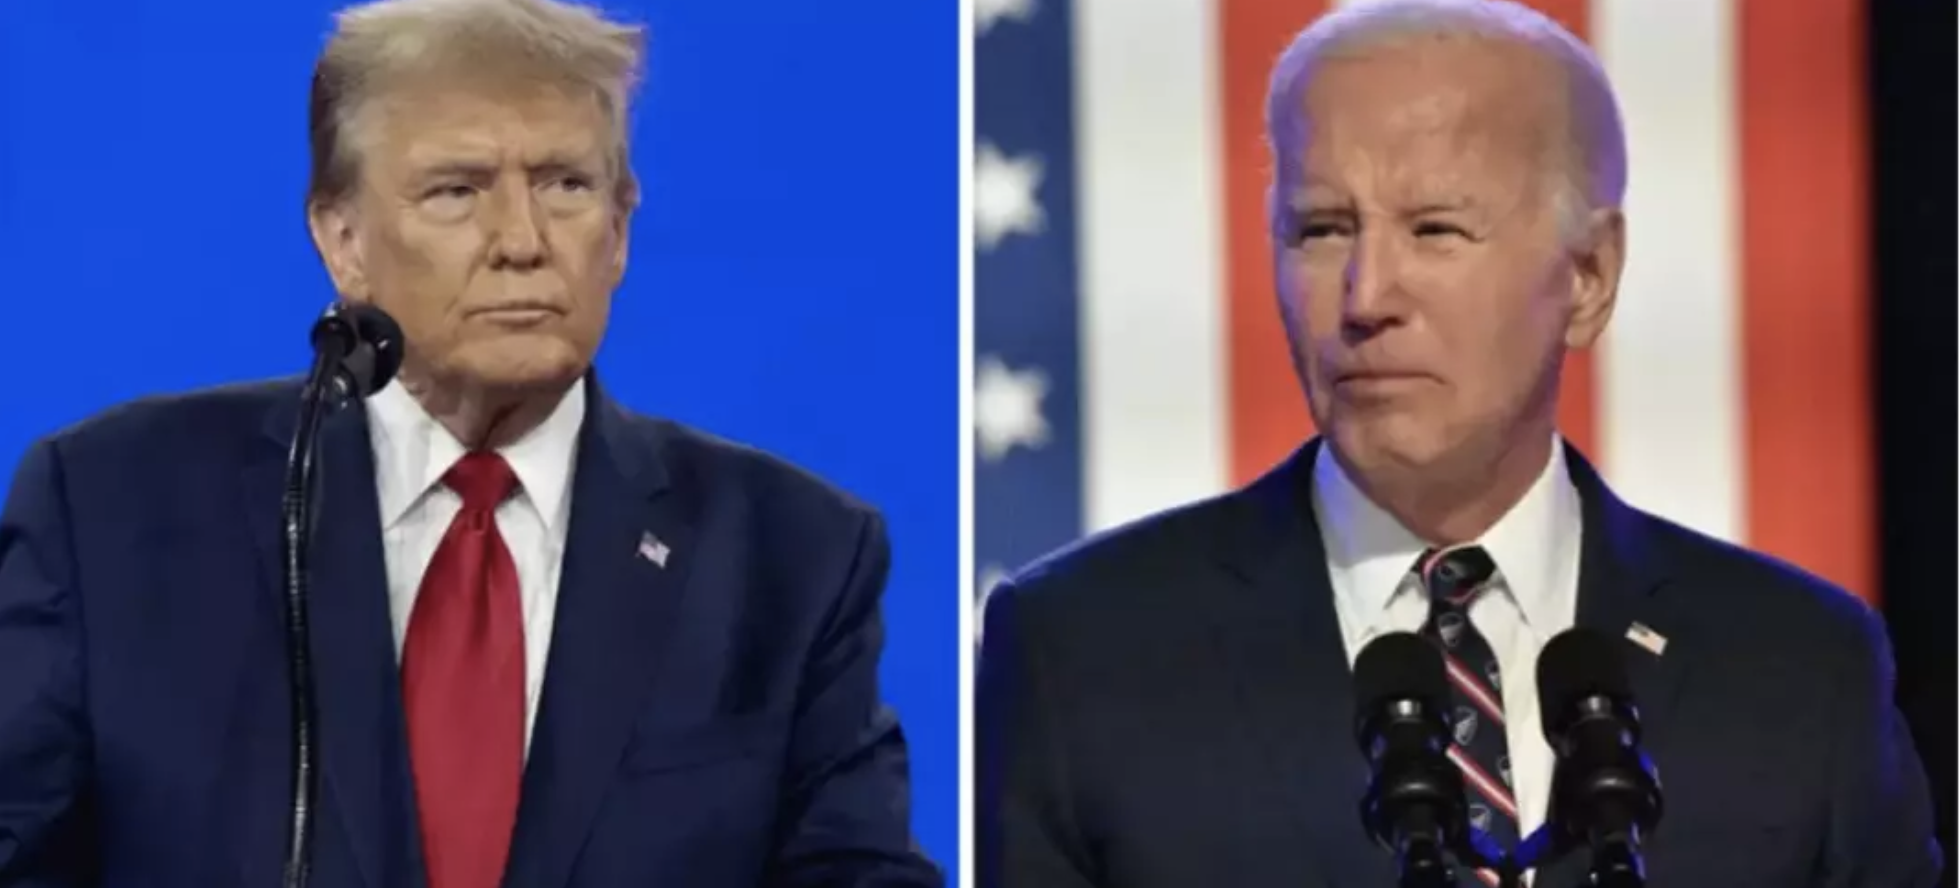 Présidentielle américaine : Joe Biden et Donald Trump remportent l’investiture de leurs partis respectifs